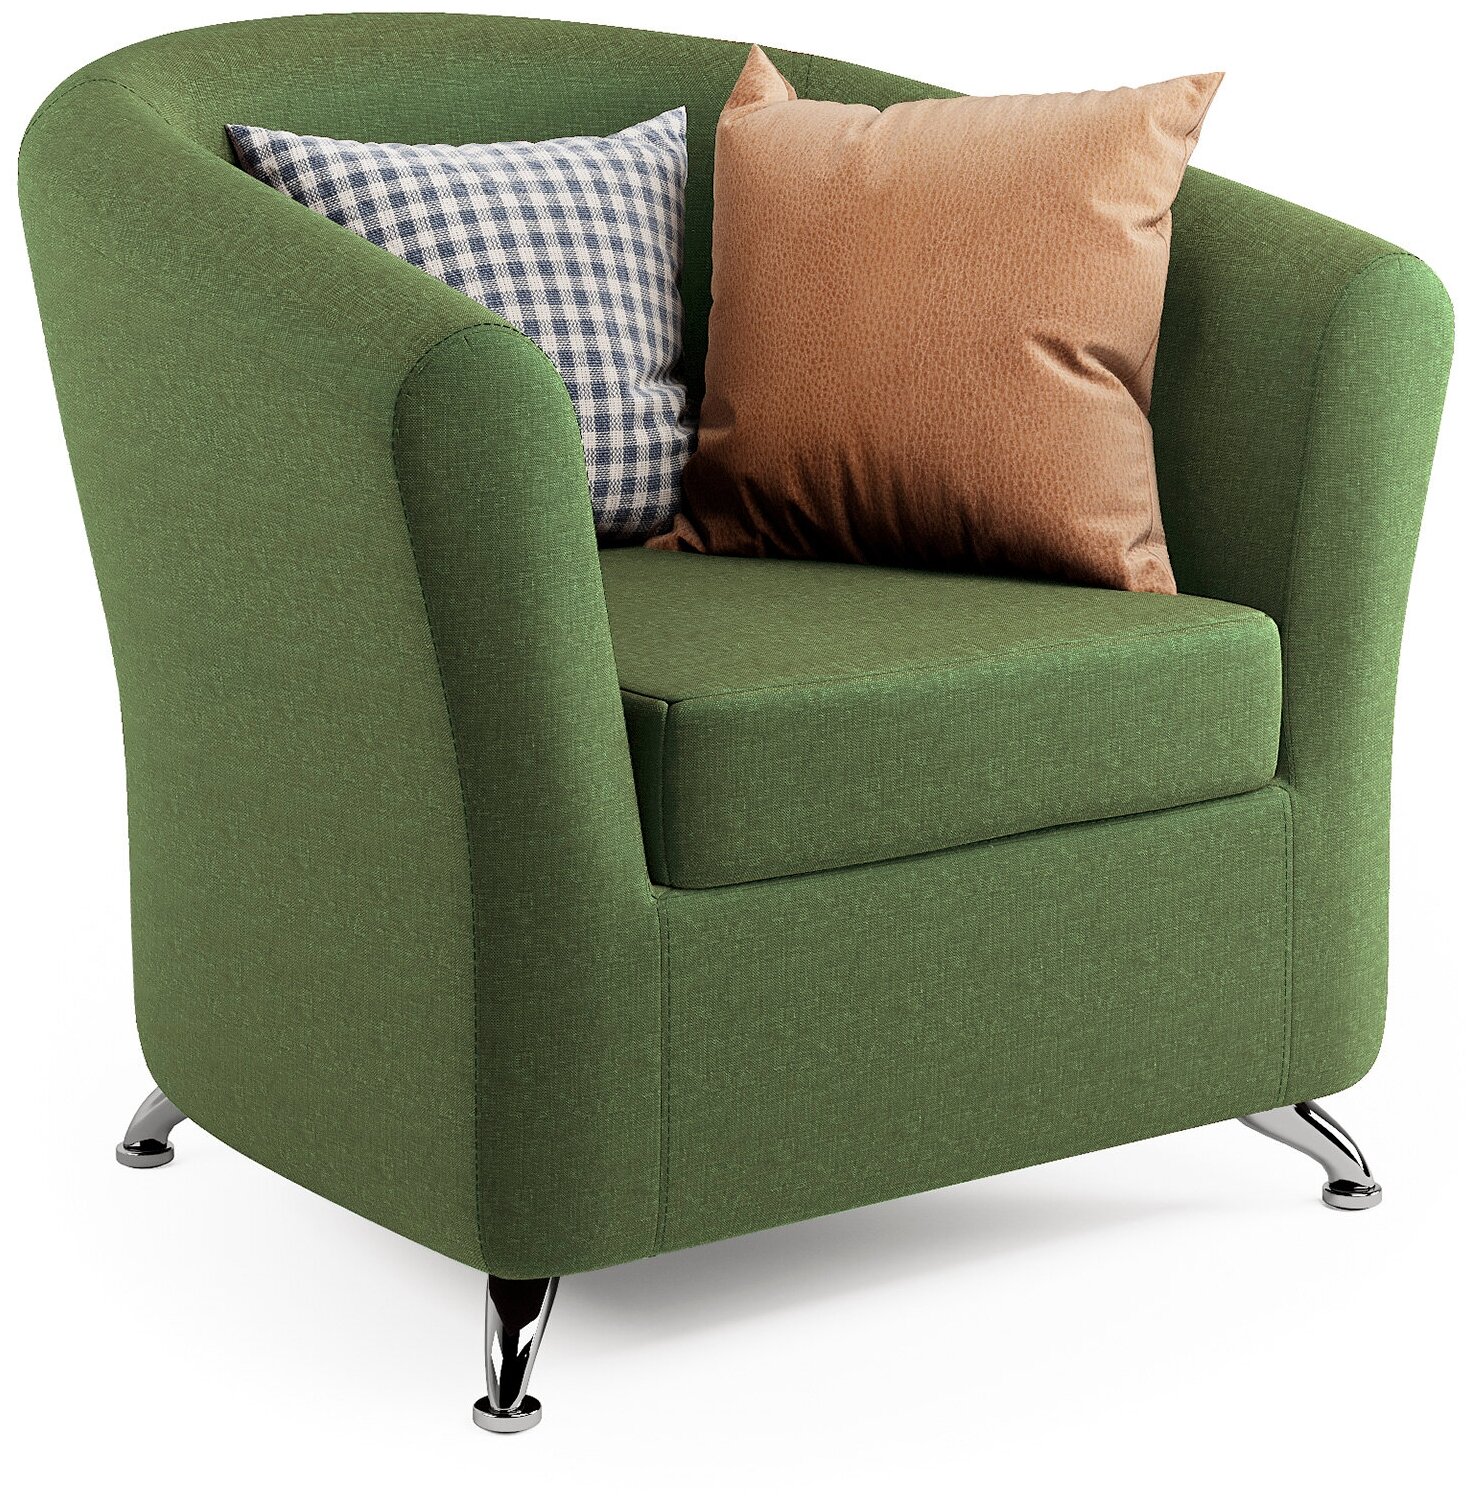 Кресло Шарм-Дизайн Евро зеленая рогожка